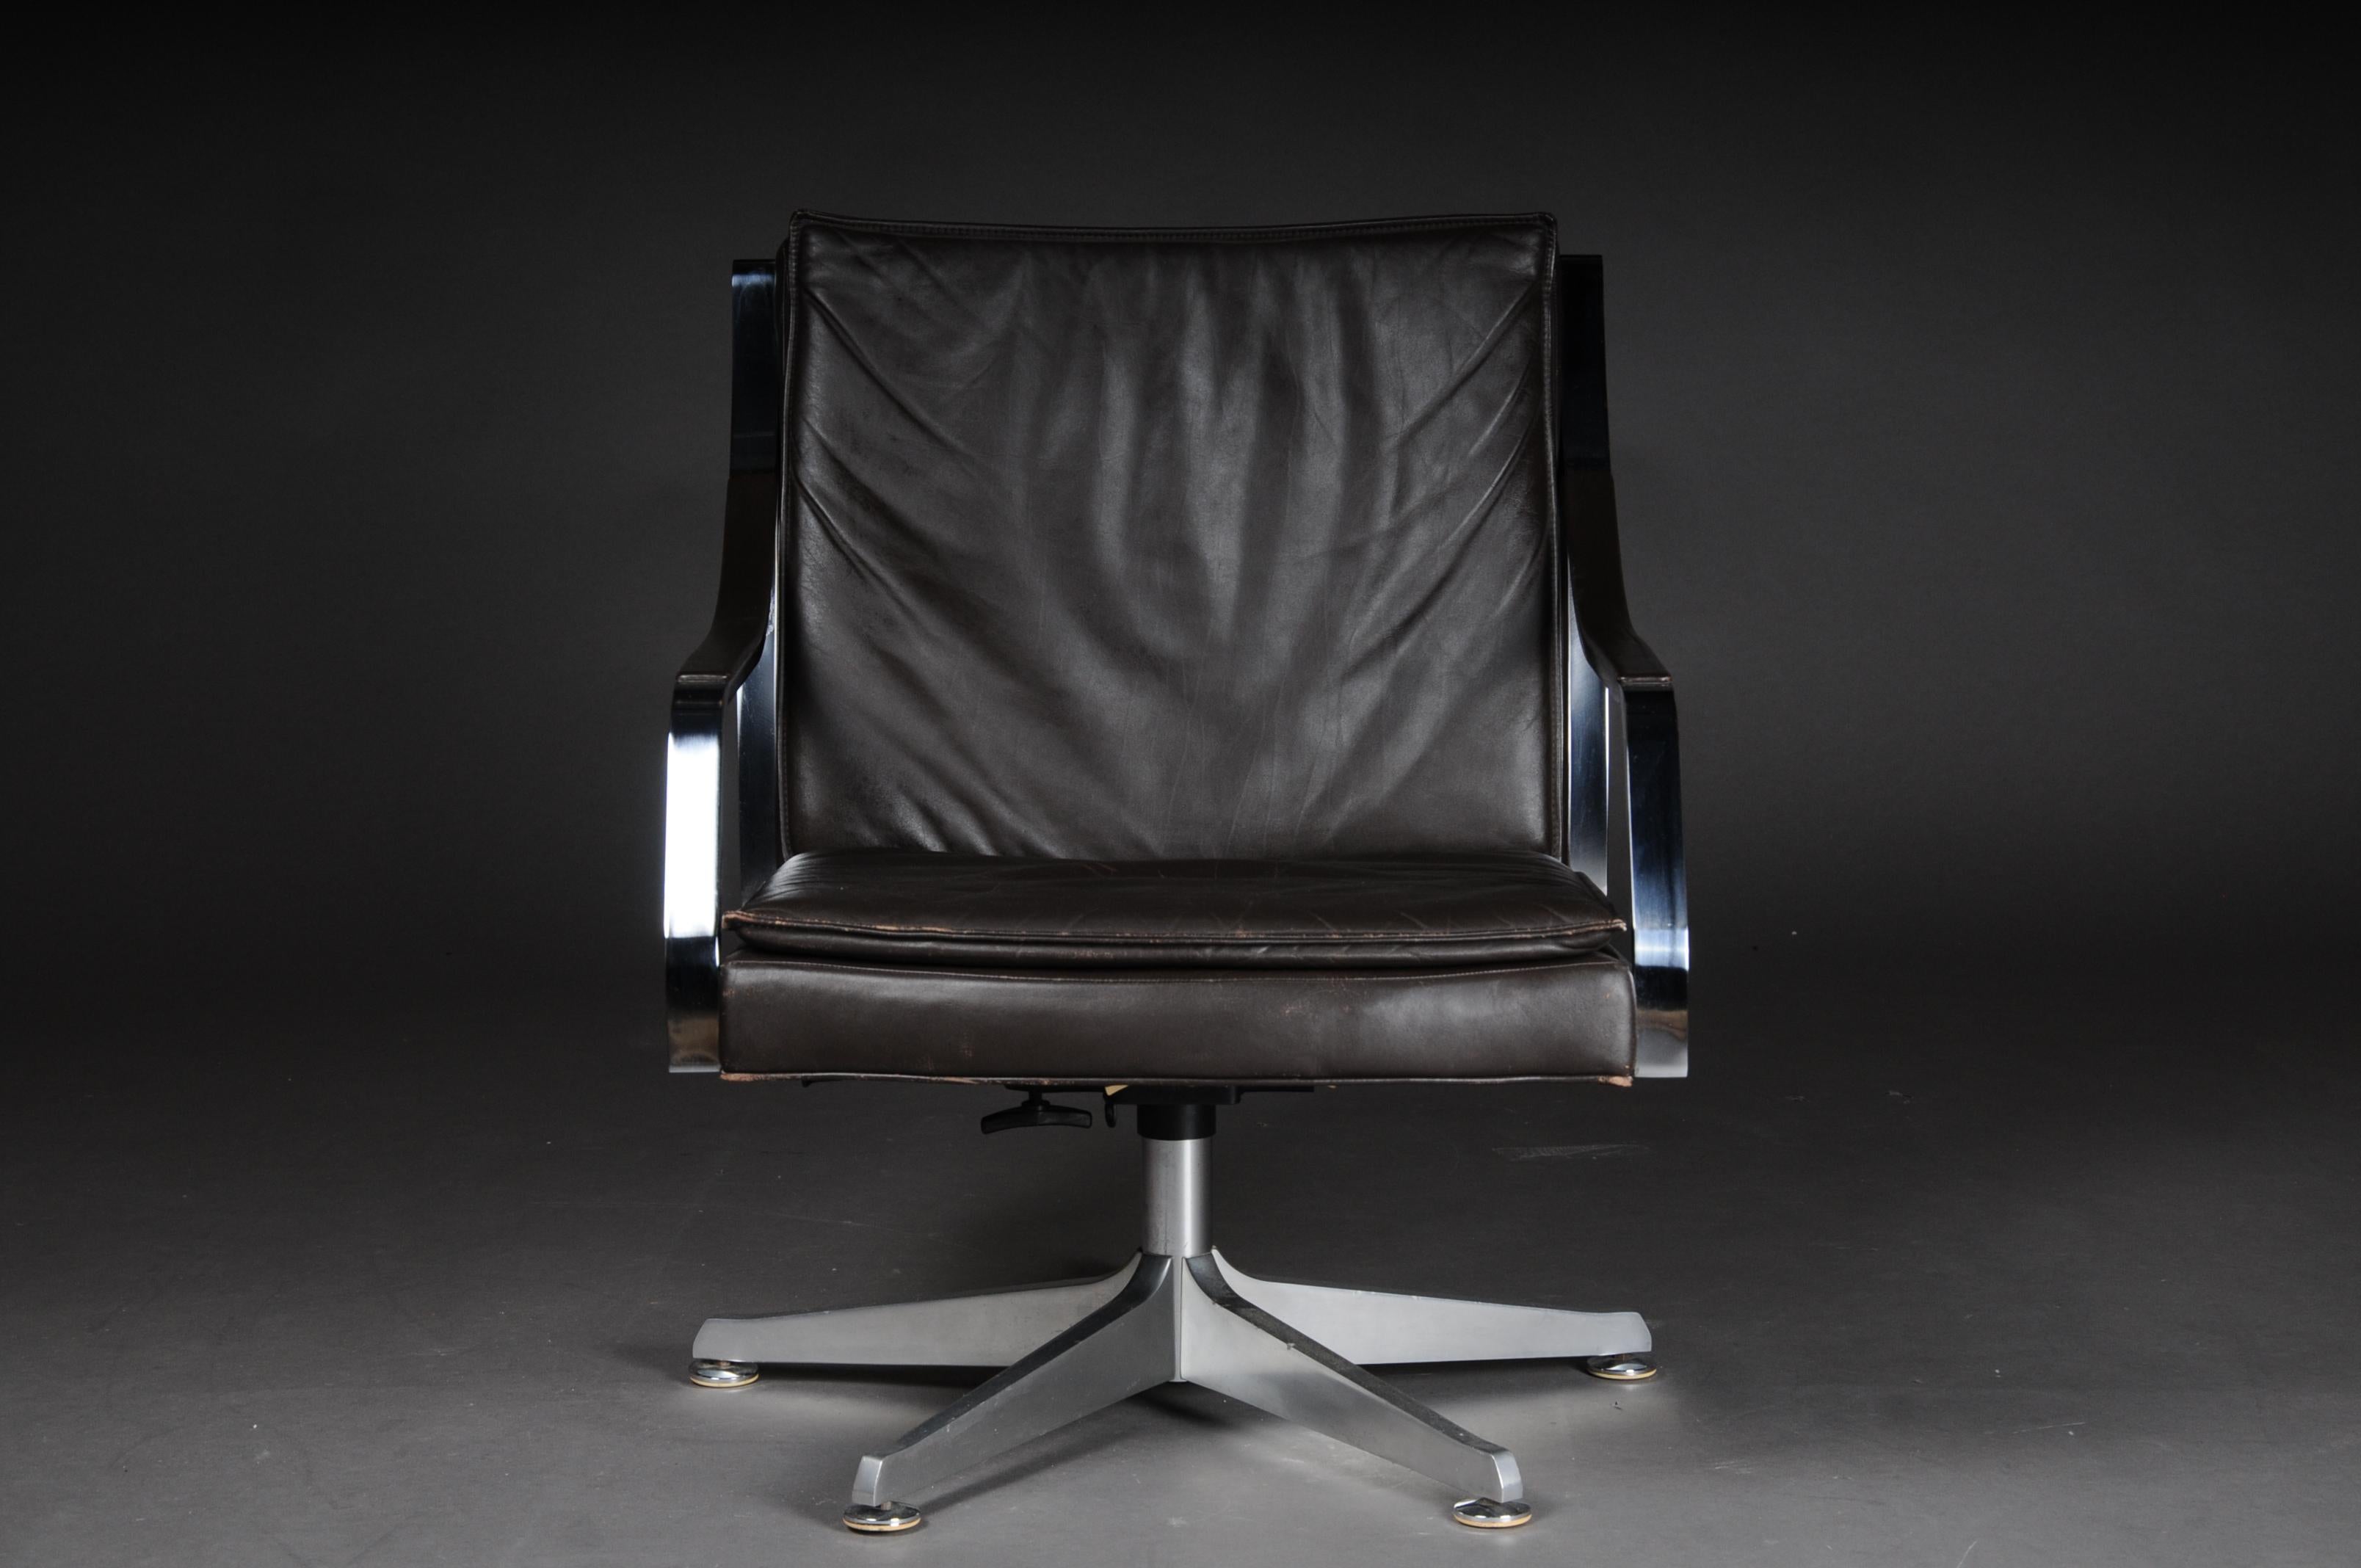 Paar (2) Designer Sessel / Lounge Chairs vintage Norwegen, 1970er Jahre

Ein Paar exklusive Vintage-Sessel. Weiches dunkles Leder. Mit Dreh- und Kippfunktion. Sehr weiches und bequemes Leder. Sitzschale auf einem sternförmigen Aluminiumrahmen. Der